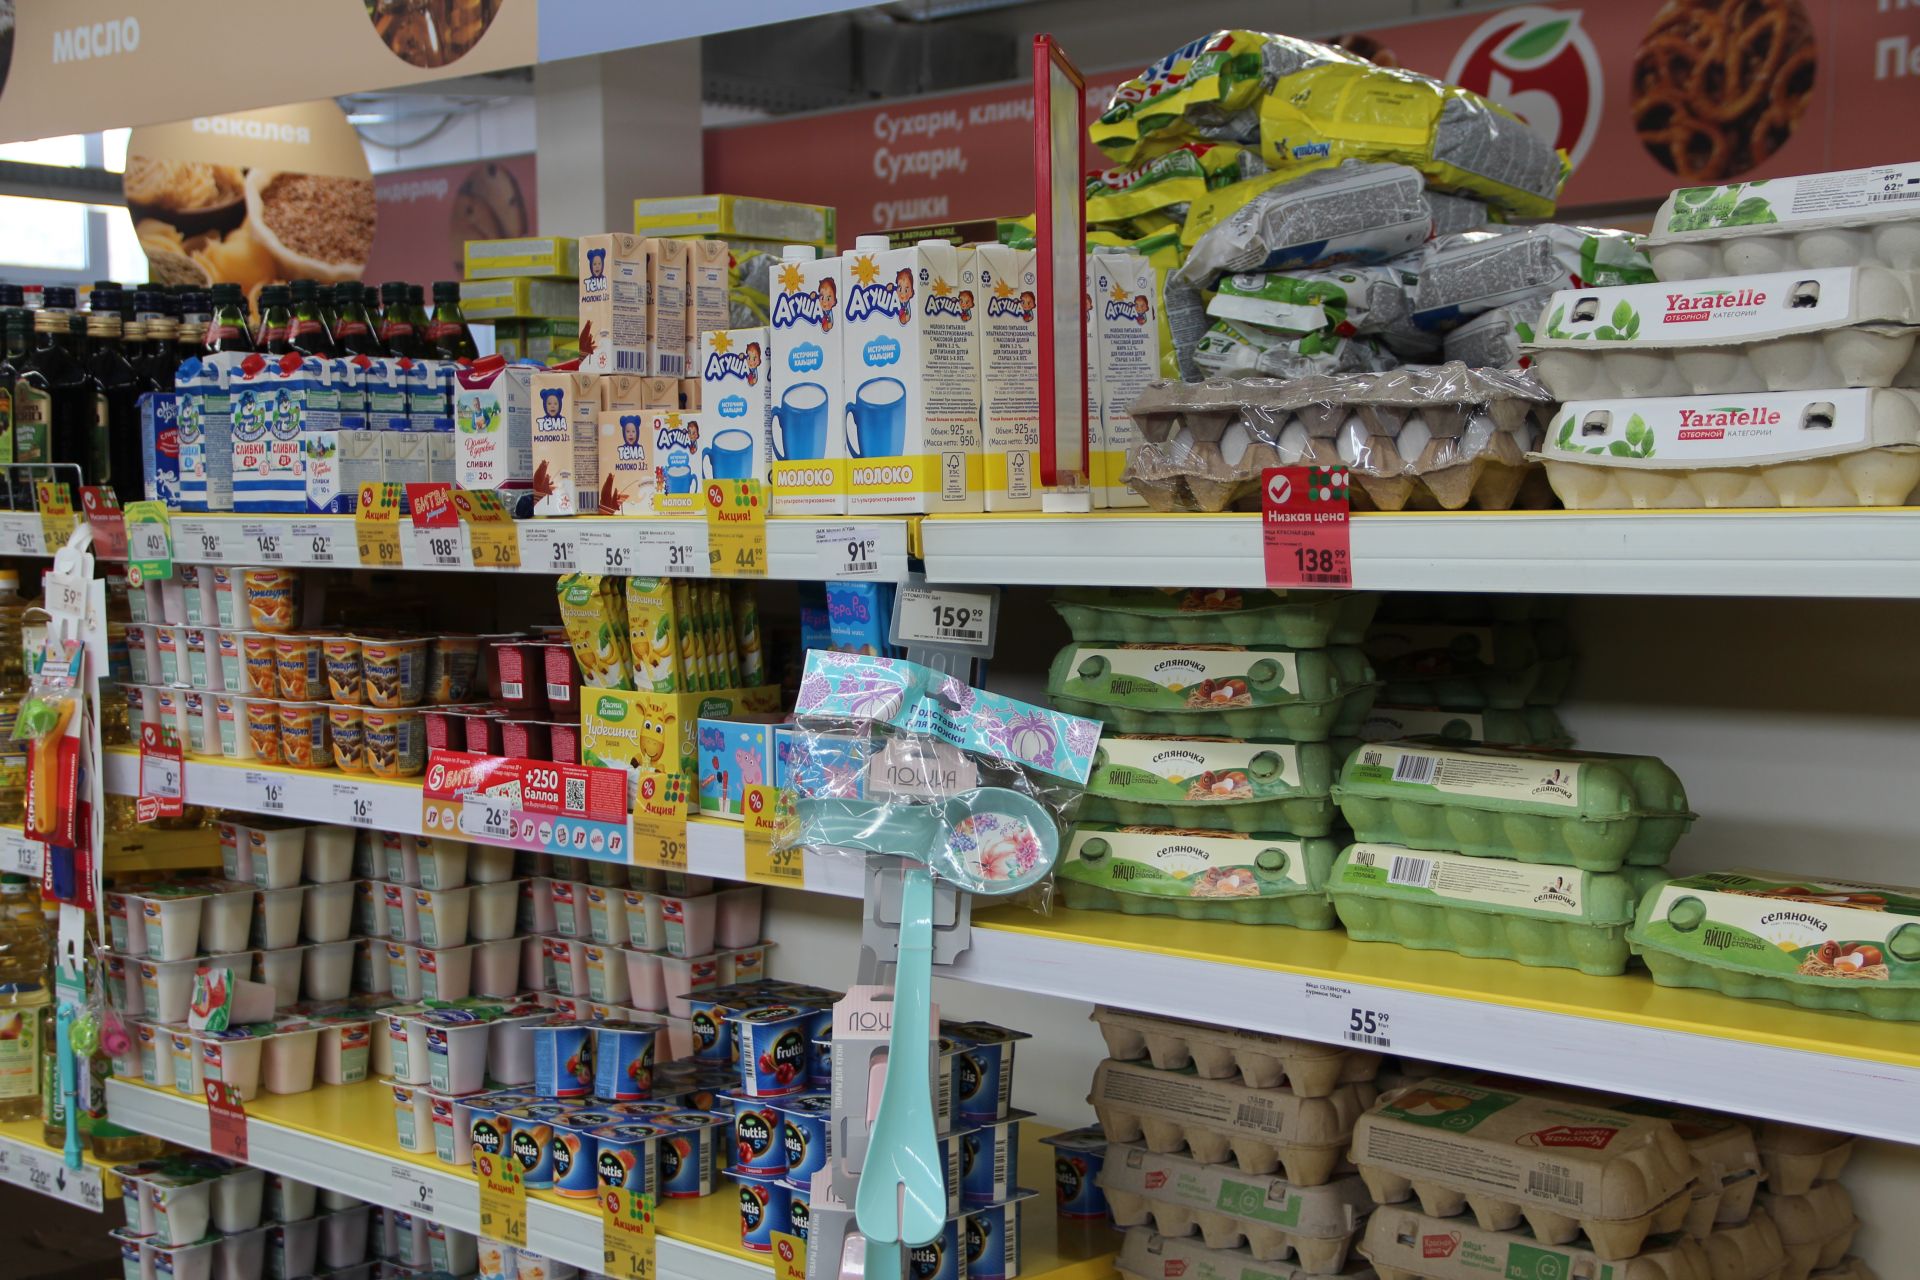 Нет повода для беспокойства: в магазинах Болгара достаточно продуктов